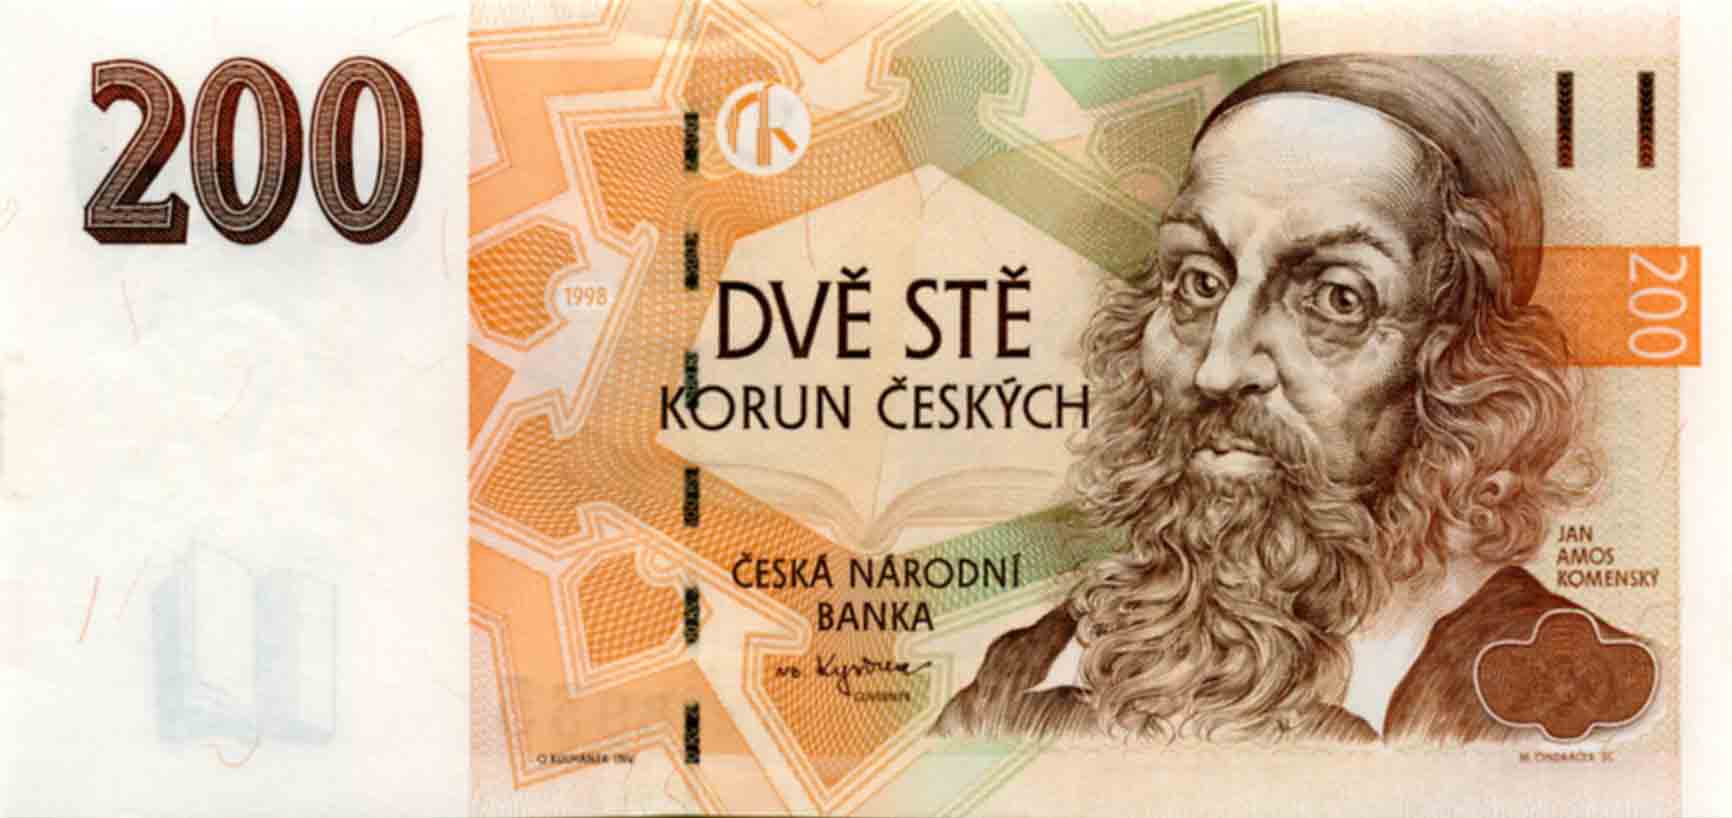 Ян Коменский - один великих символов Чехии,  его портрет был размещен на чешской купюре в 200 крон